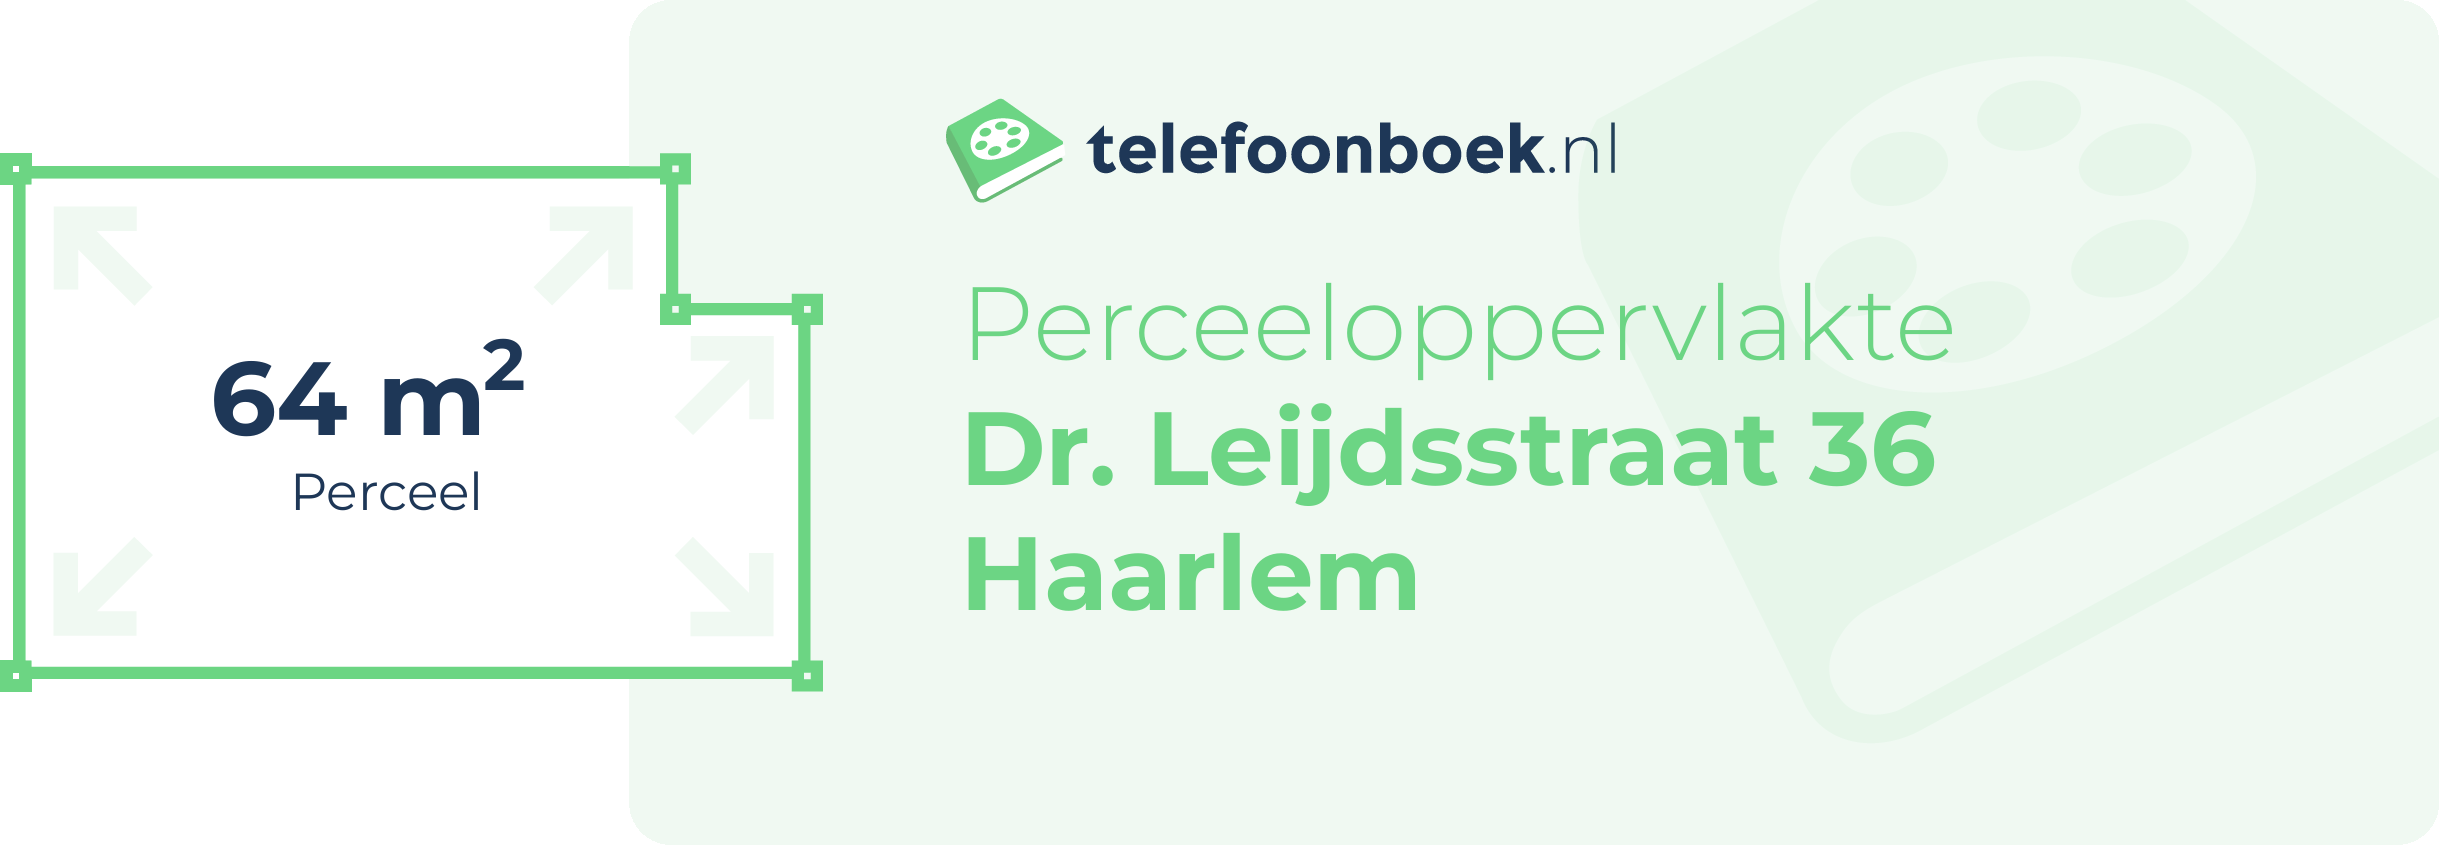 Perceeloppervlakte Dr. Leijdsstraat 36 Haarlem